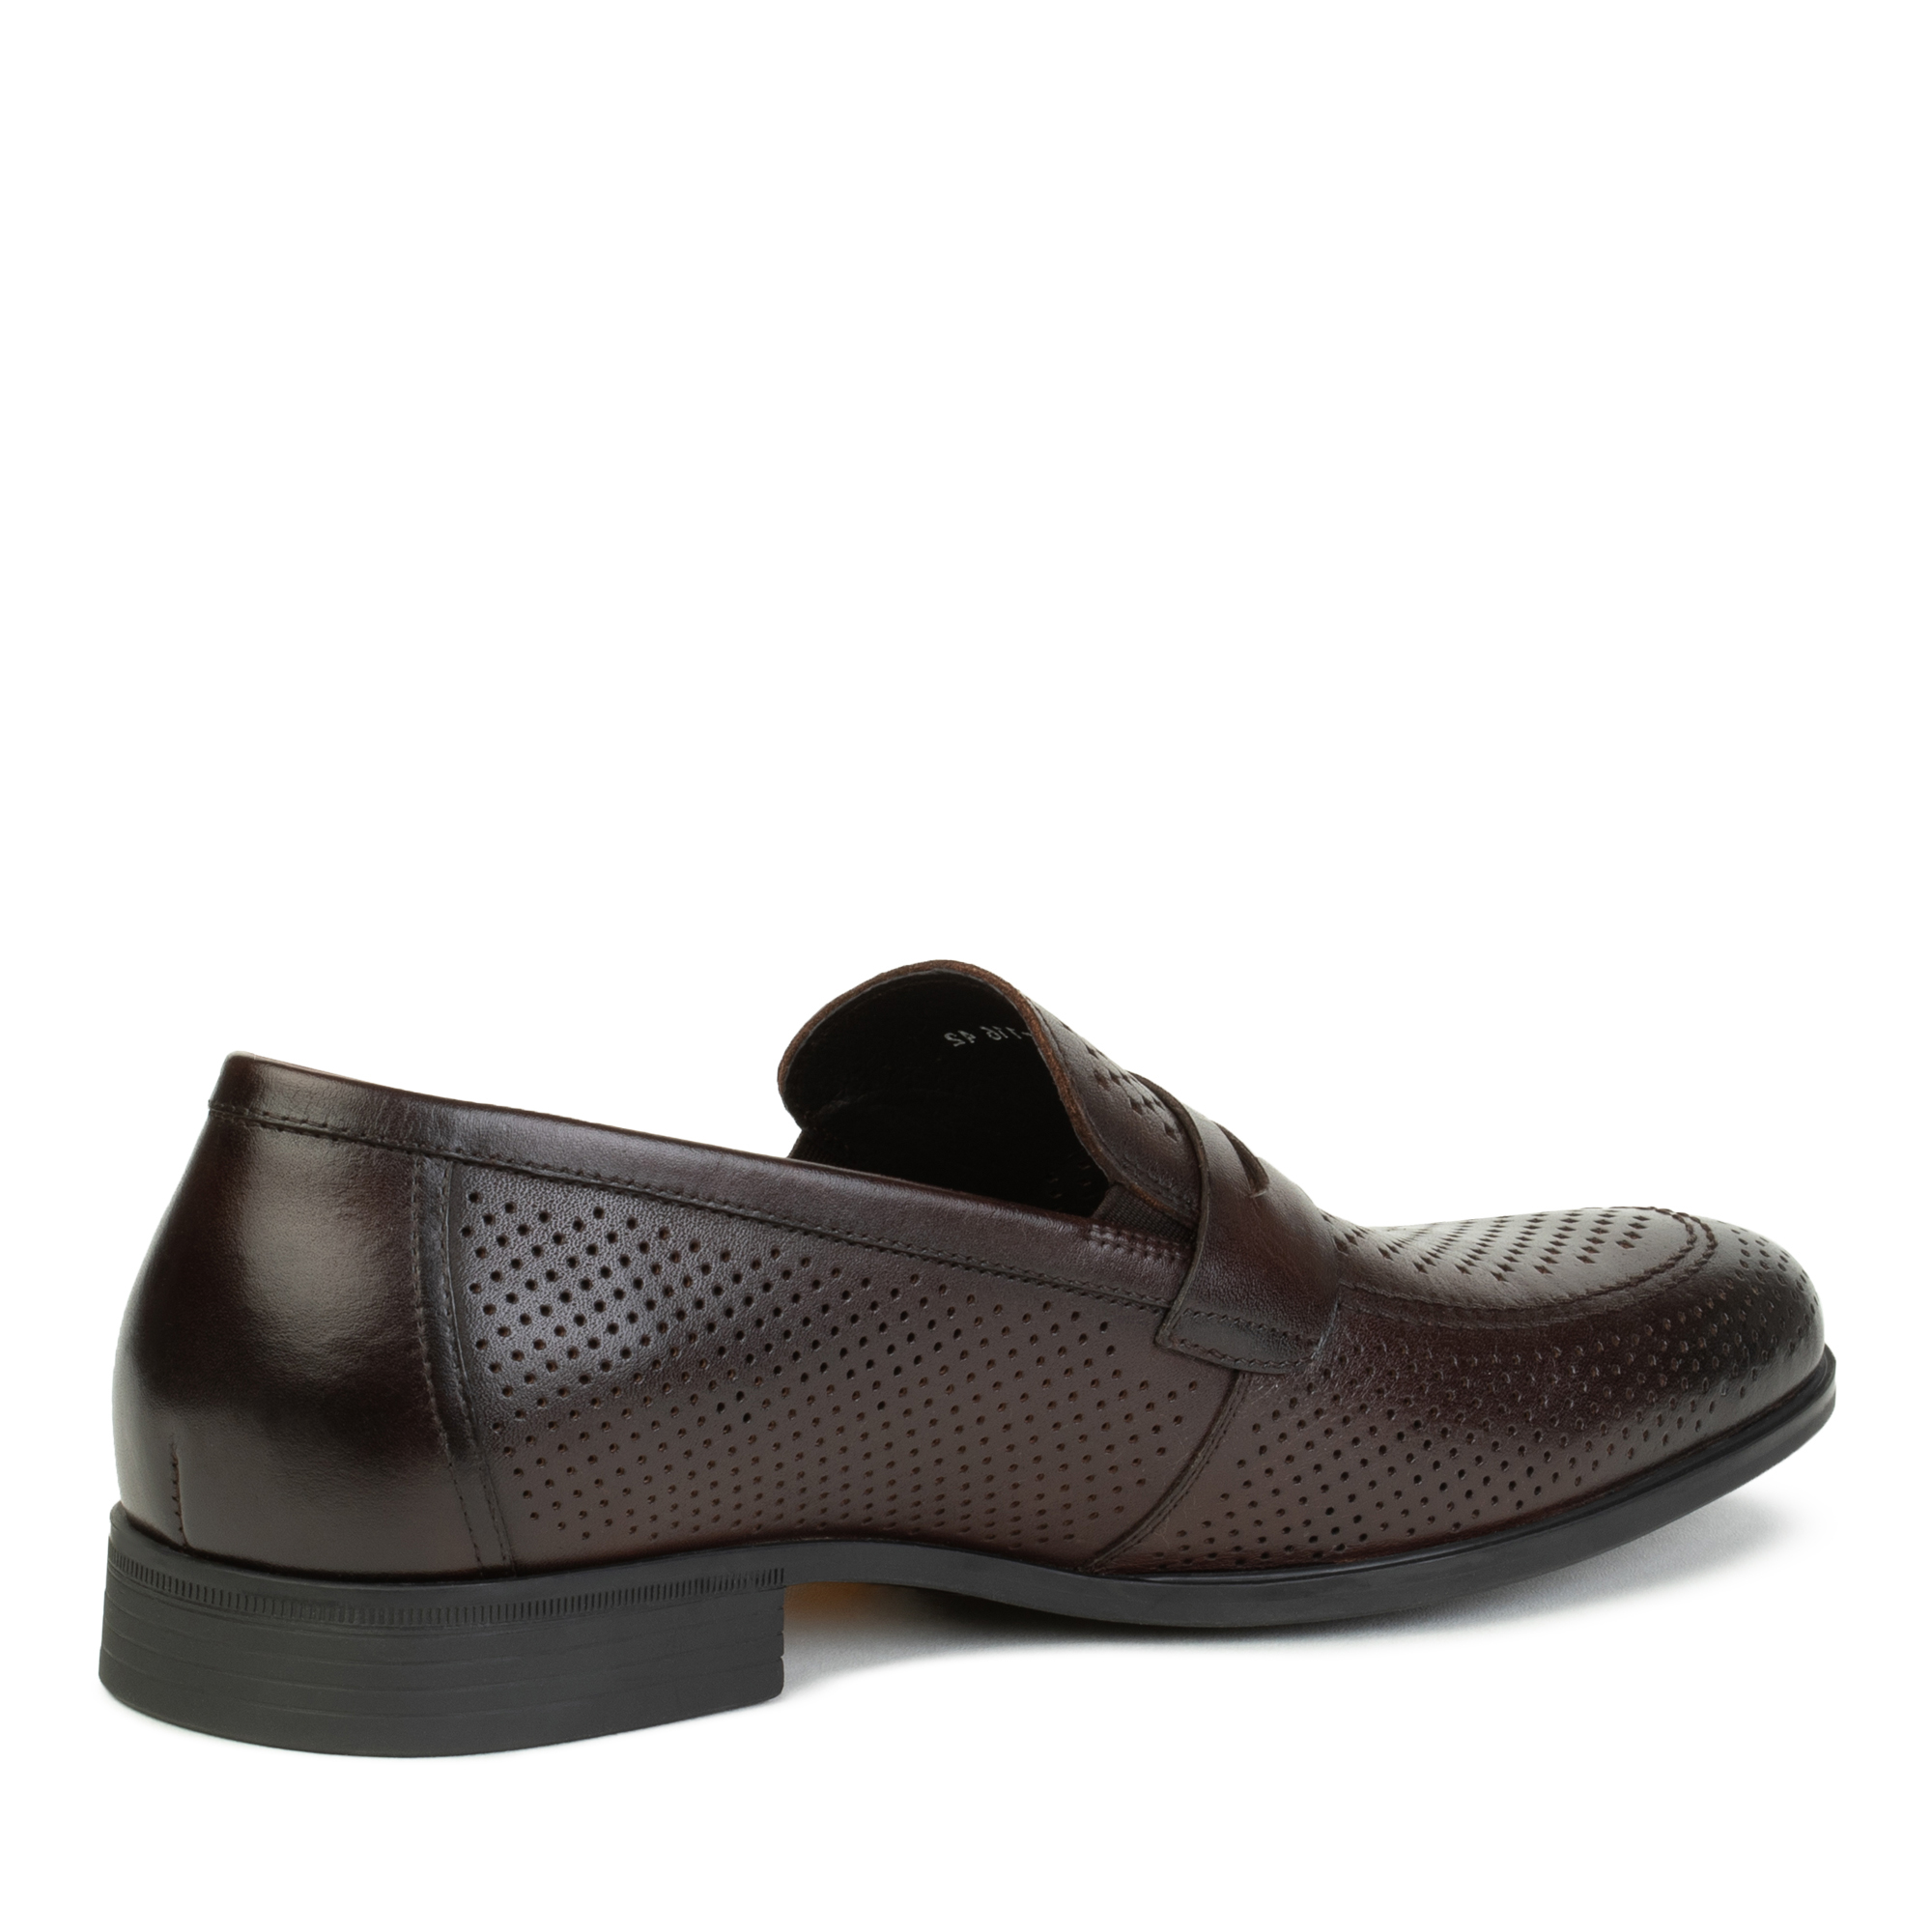 Туфли/полуботинки Thomas Munz 058-389A-1609, цвет темно-коричневый, размер 44 - фото 3